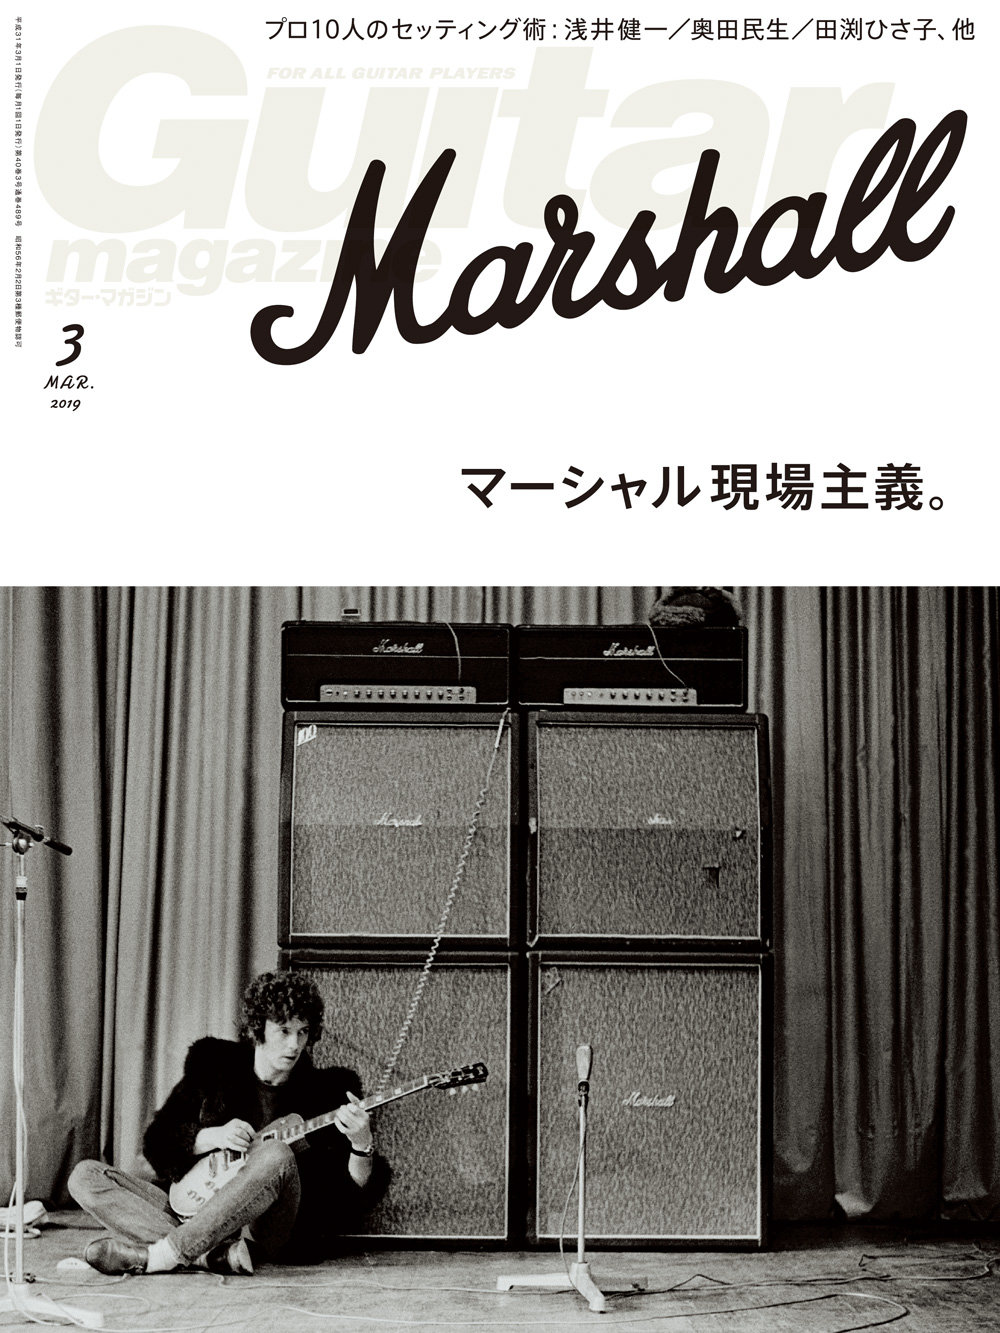 歴史的なお勉強はほどほどに プロの鳴らし方を徹底的に調査したマーシャル アンプ総力特集 ギター マガジン19年3月号 発売 News Release リットーミュージック